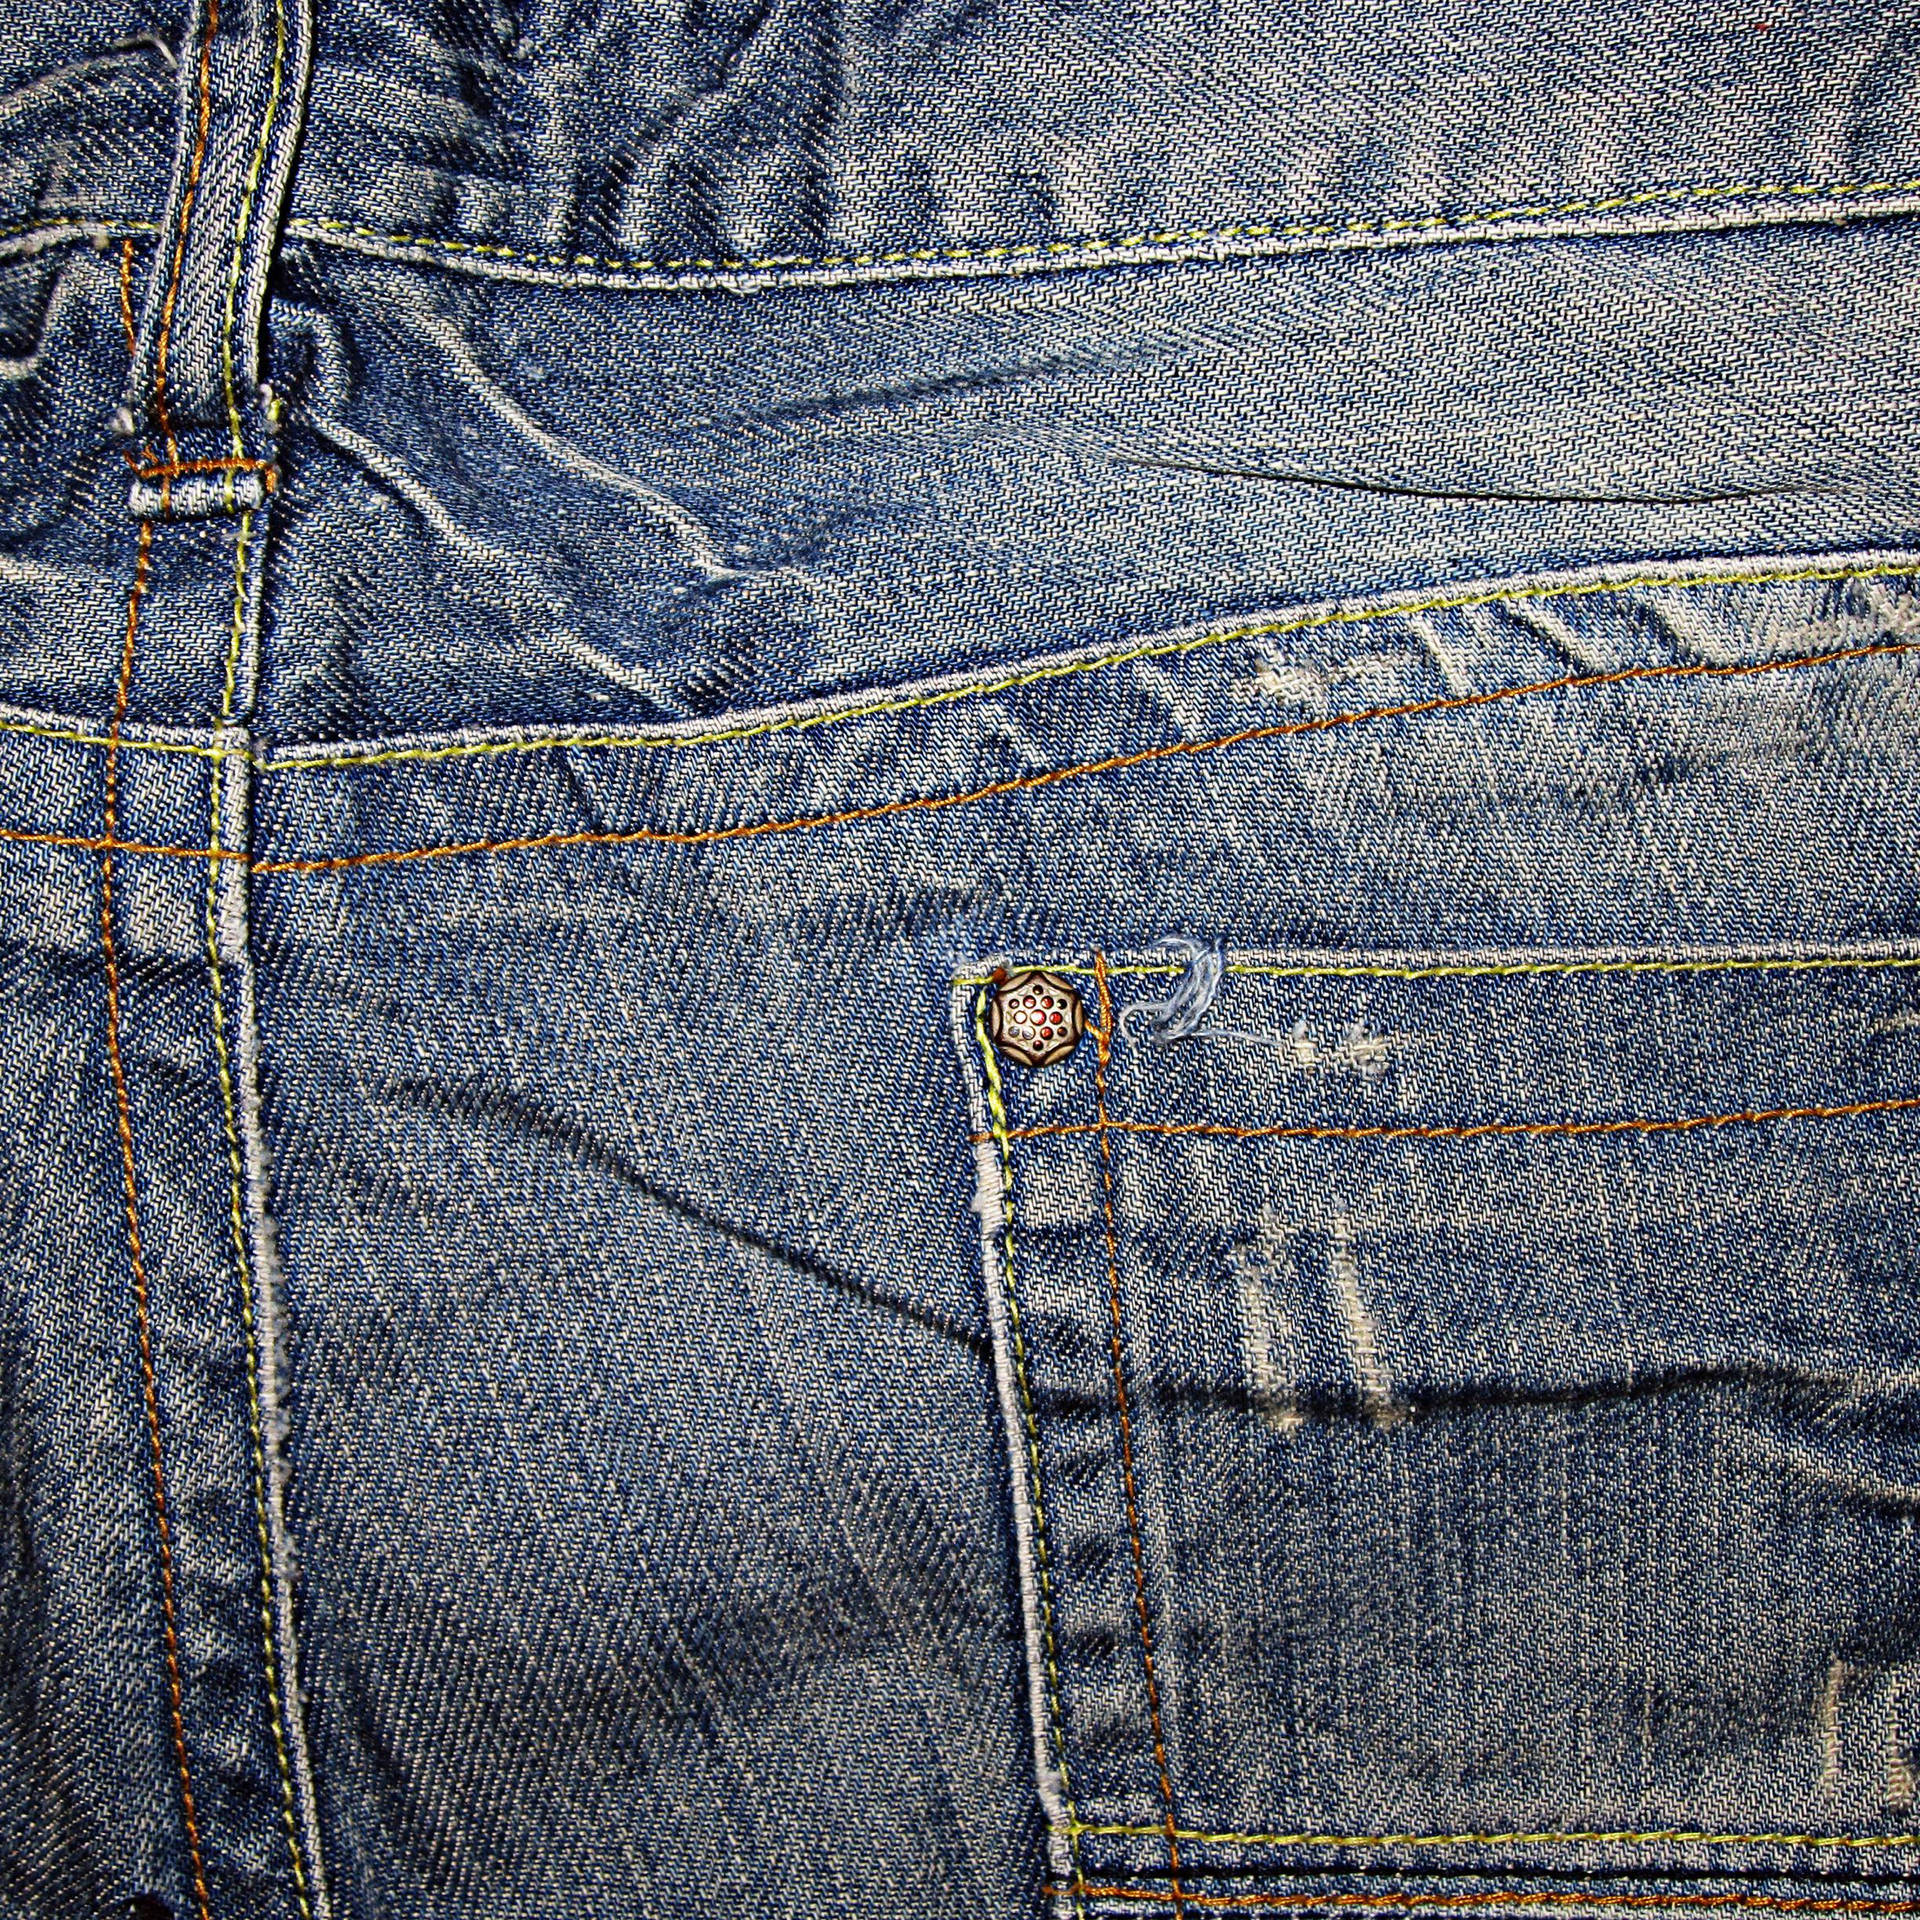 Denim Blue Jeans Back Pocket Background